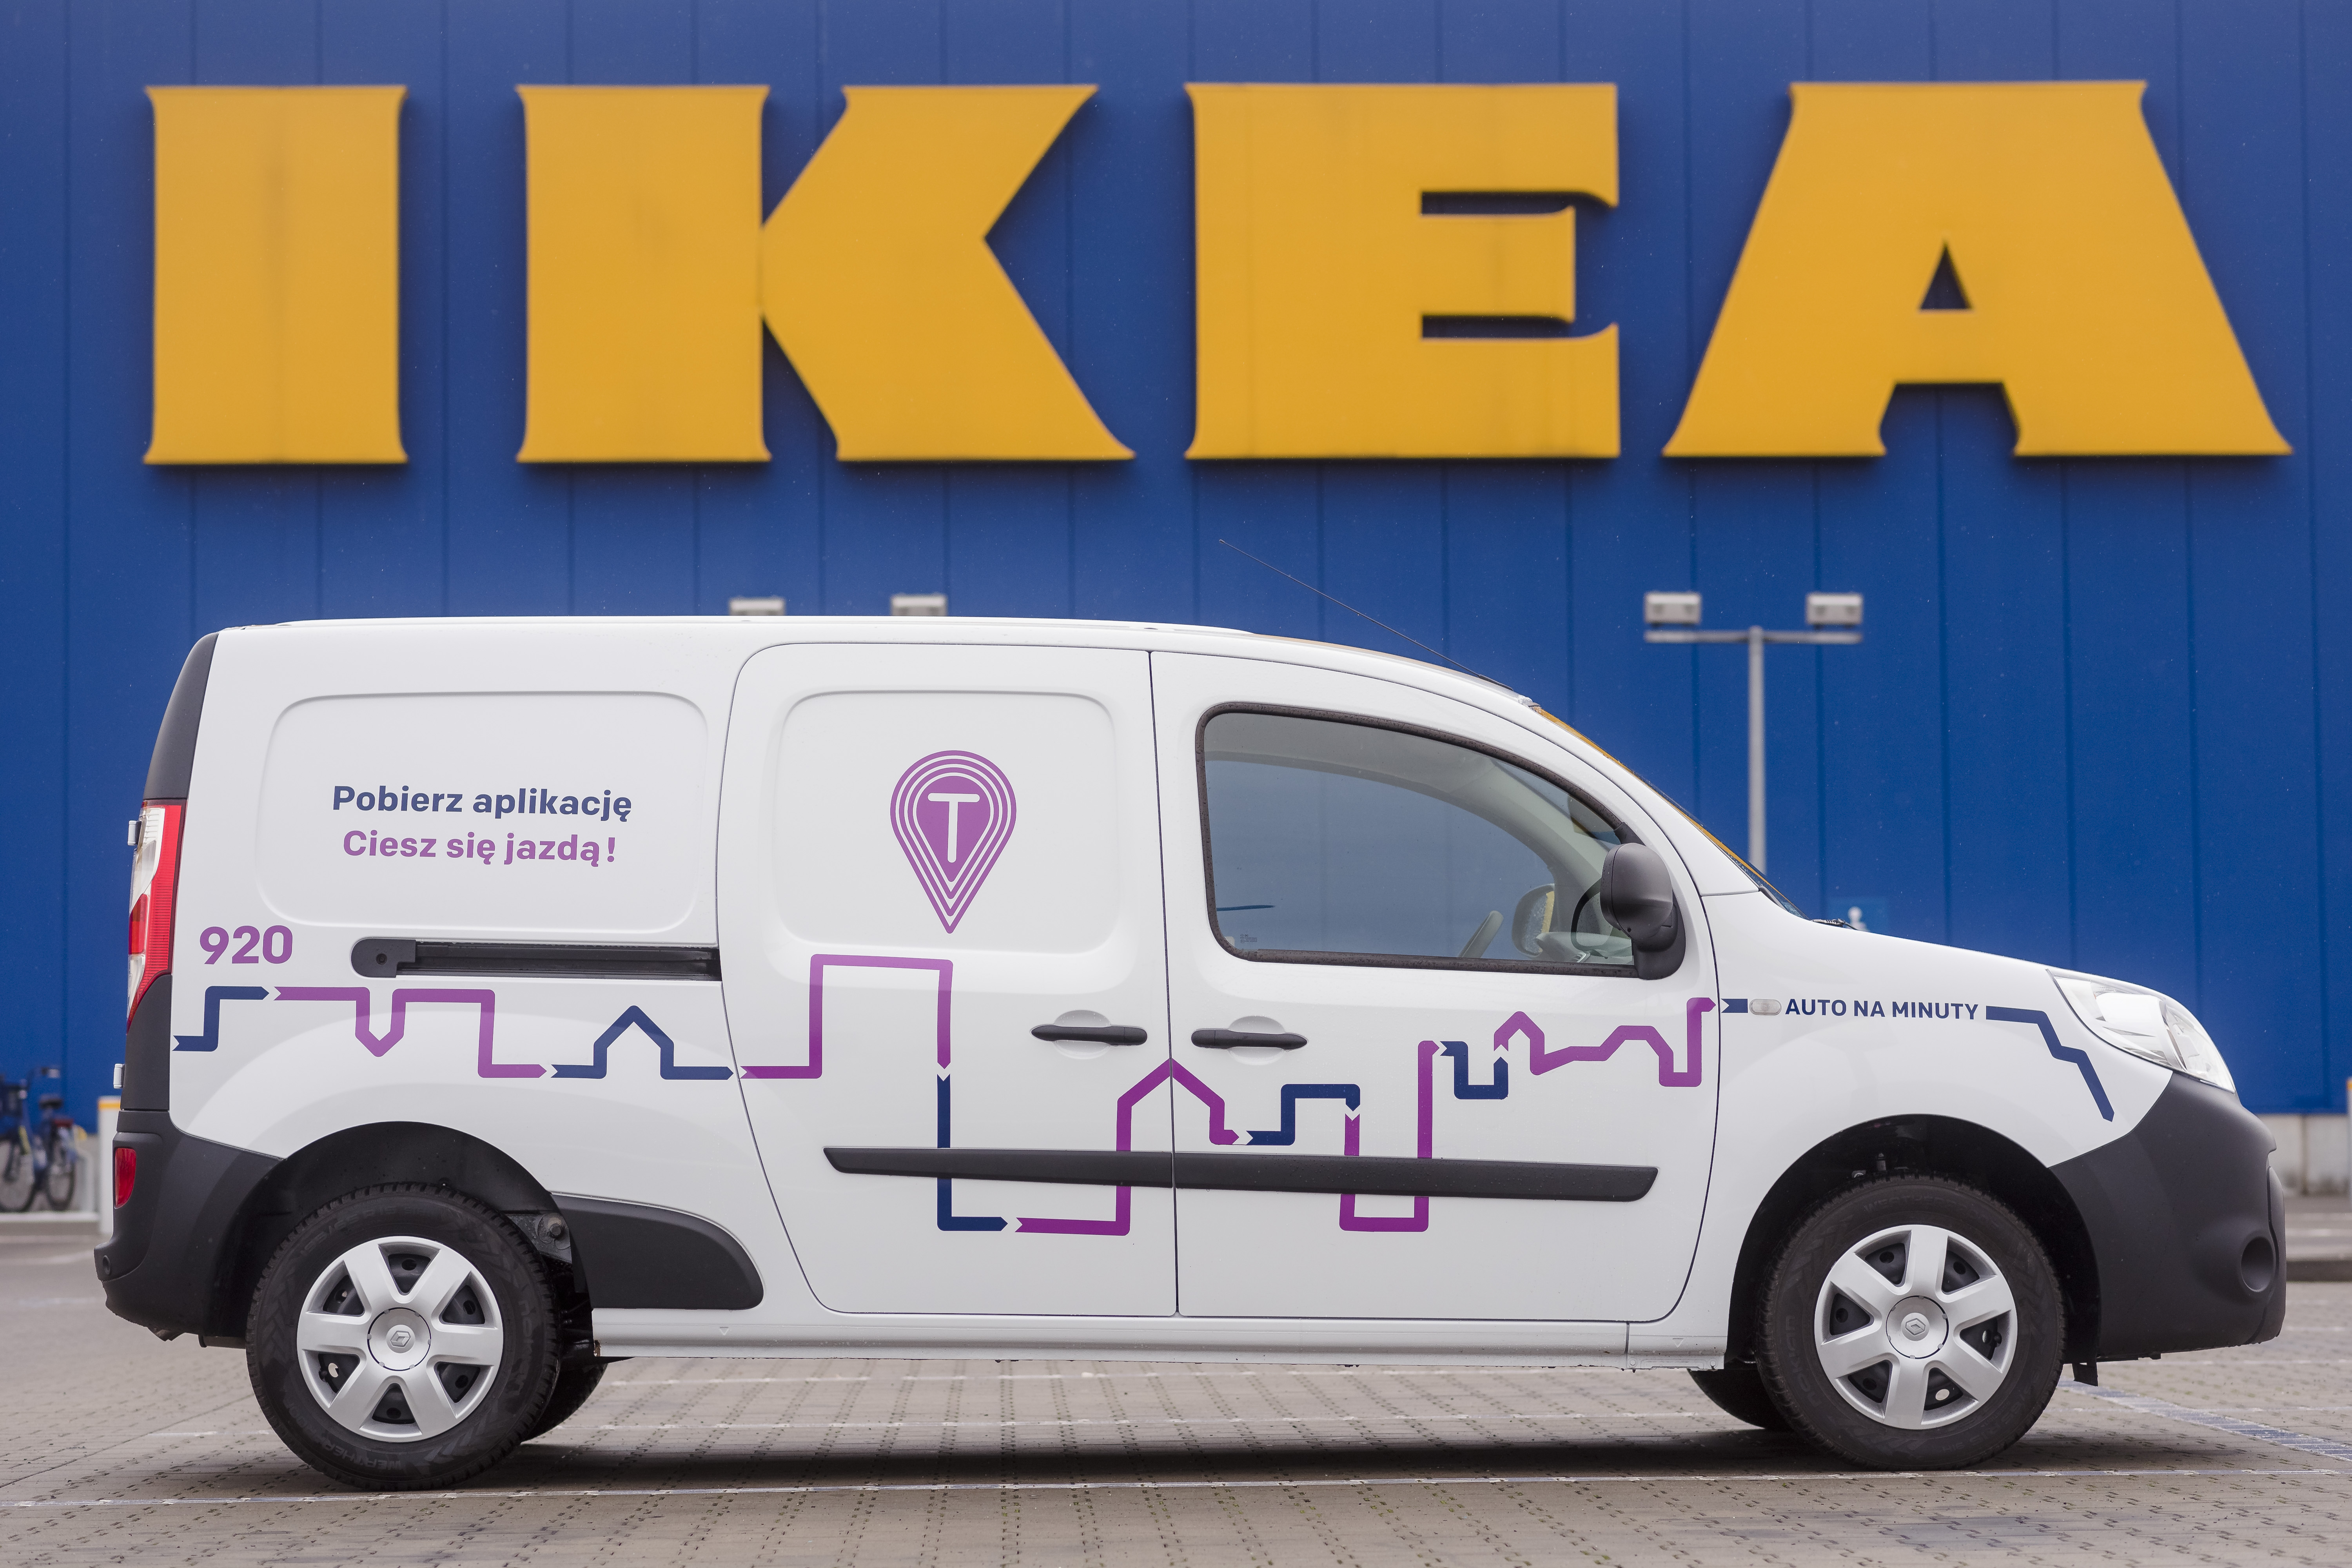 Traficar I Ikea Oferuja Klientom Wynajem Samochodow Dostawczych